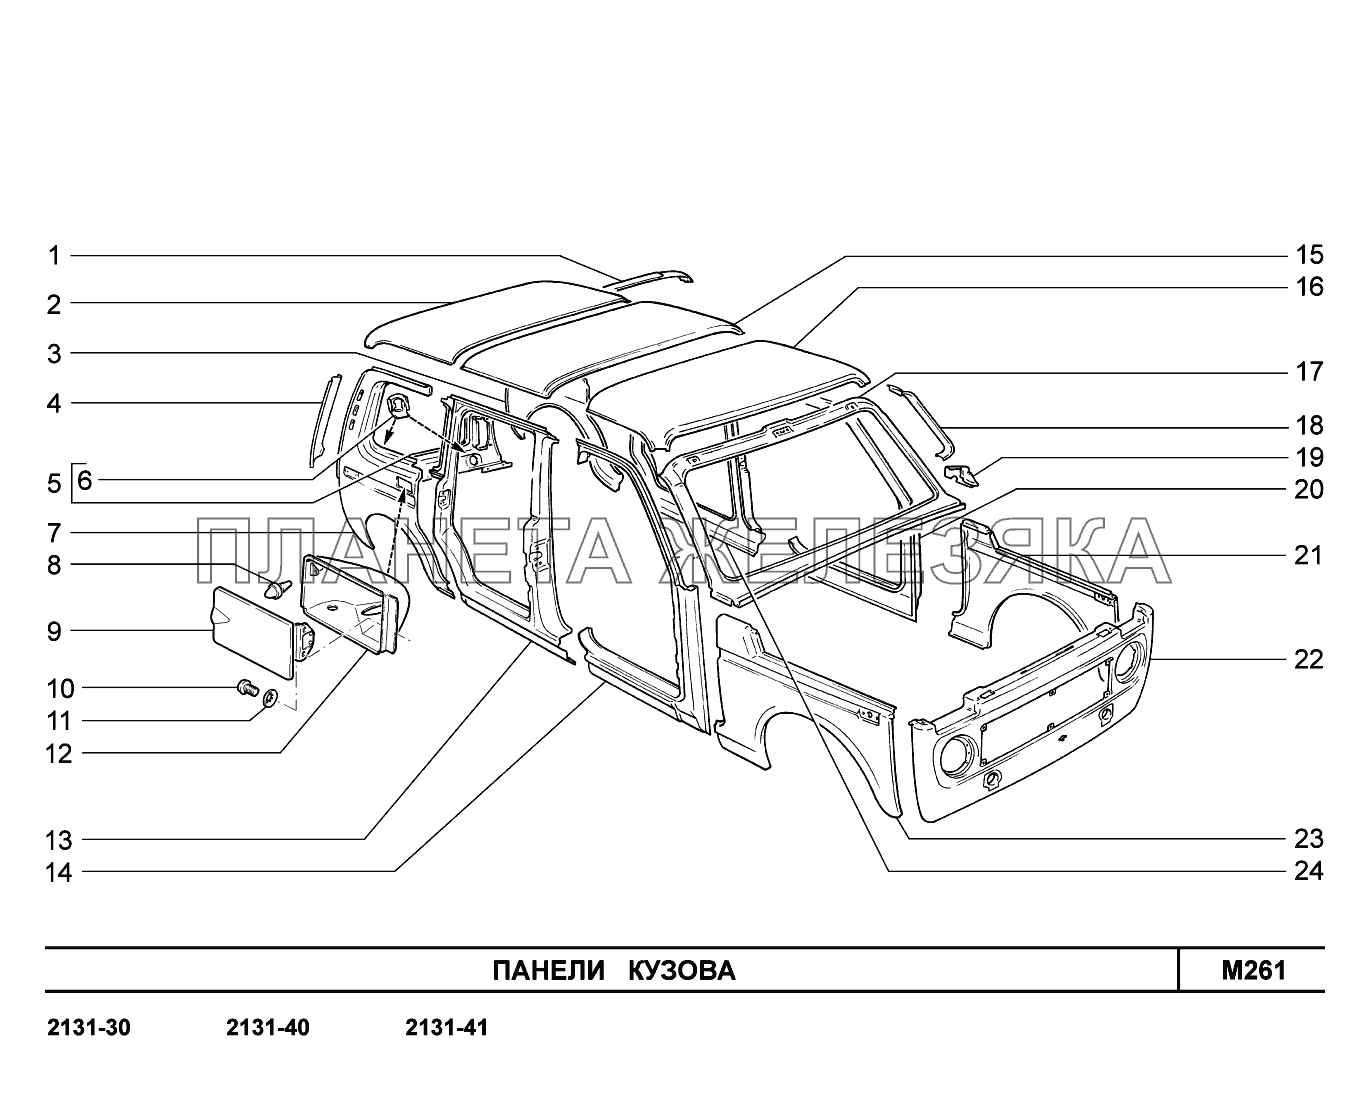 M261. Панели кузова LADA 4x4